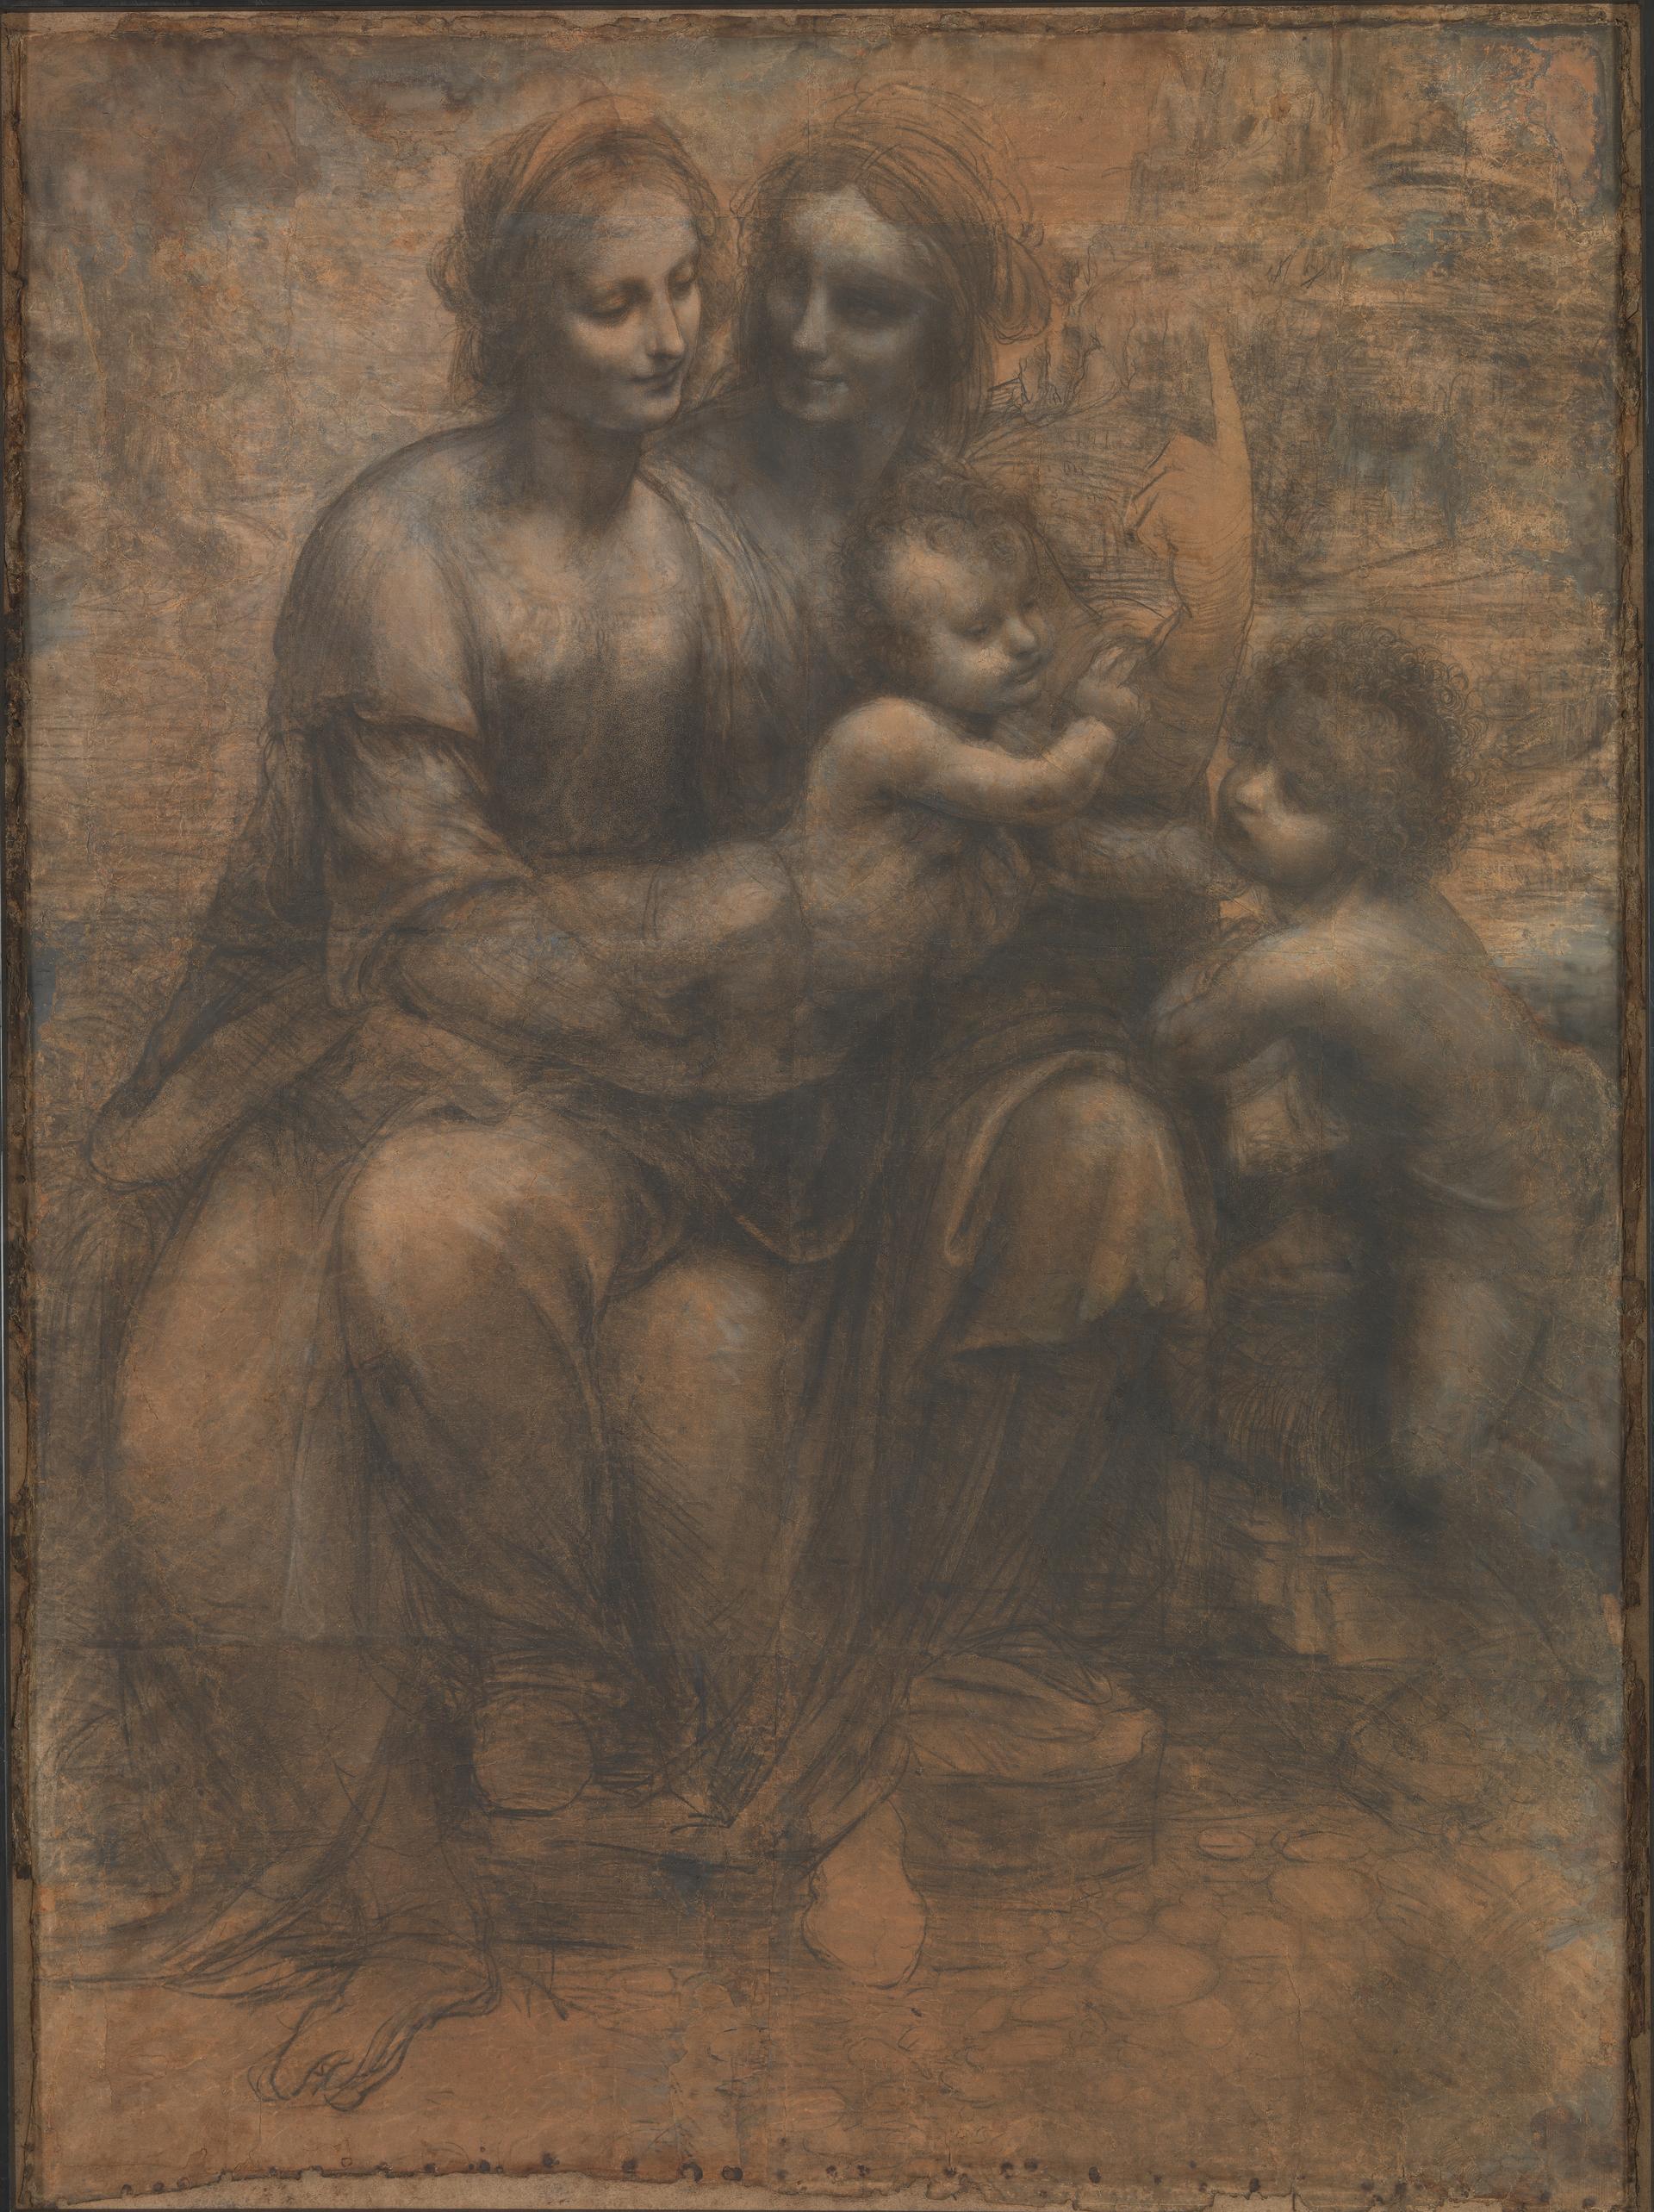 伯靈頓宮草圖 by Leonardo da Vinci - 約 1499 年至 1500 年 - 141.5 × 104.6 釐米 